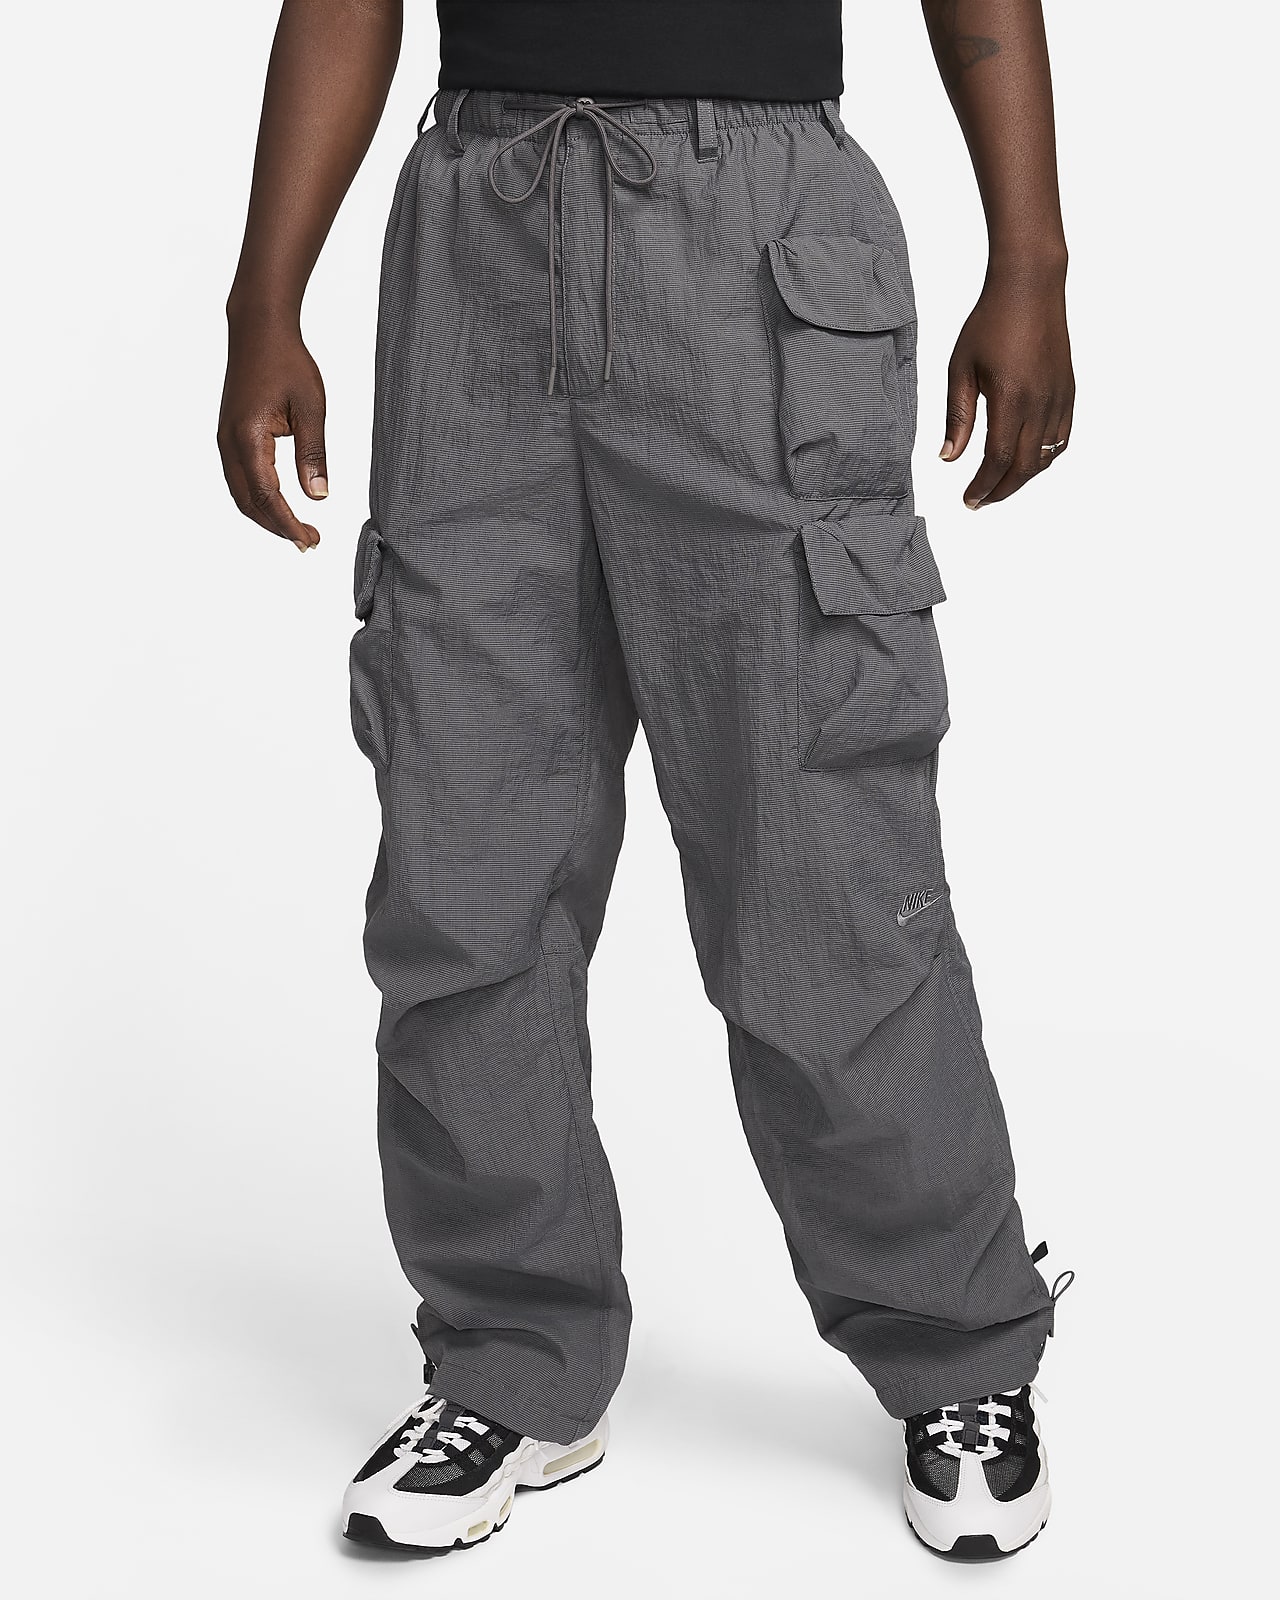 Pánské tkané kalhoty Nike Sportswear Tech Pack s podšívkou